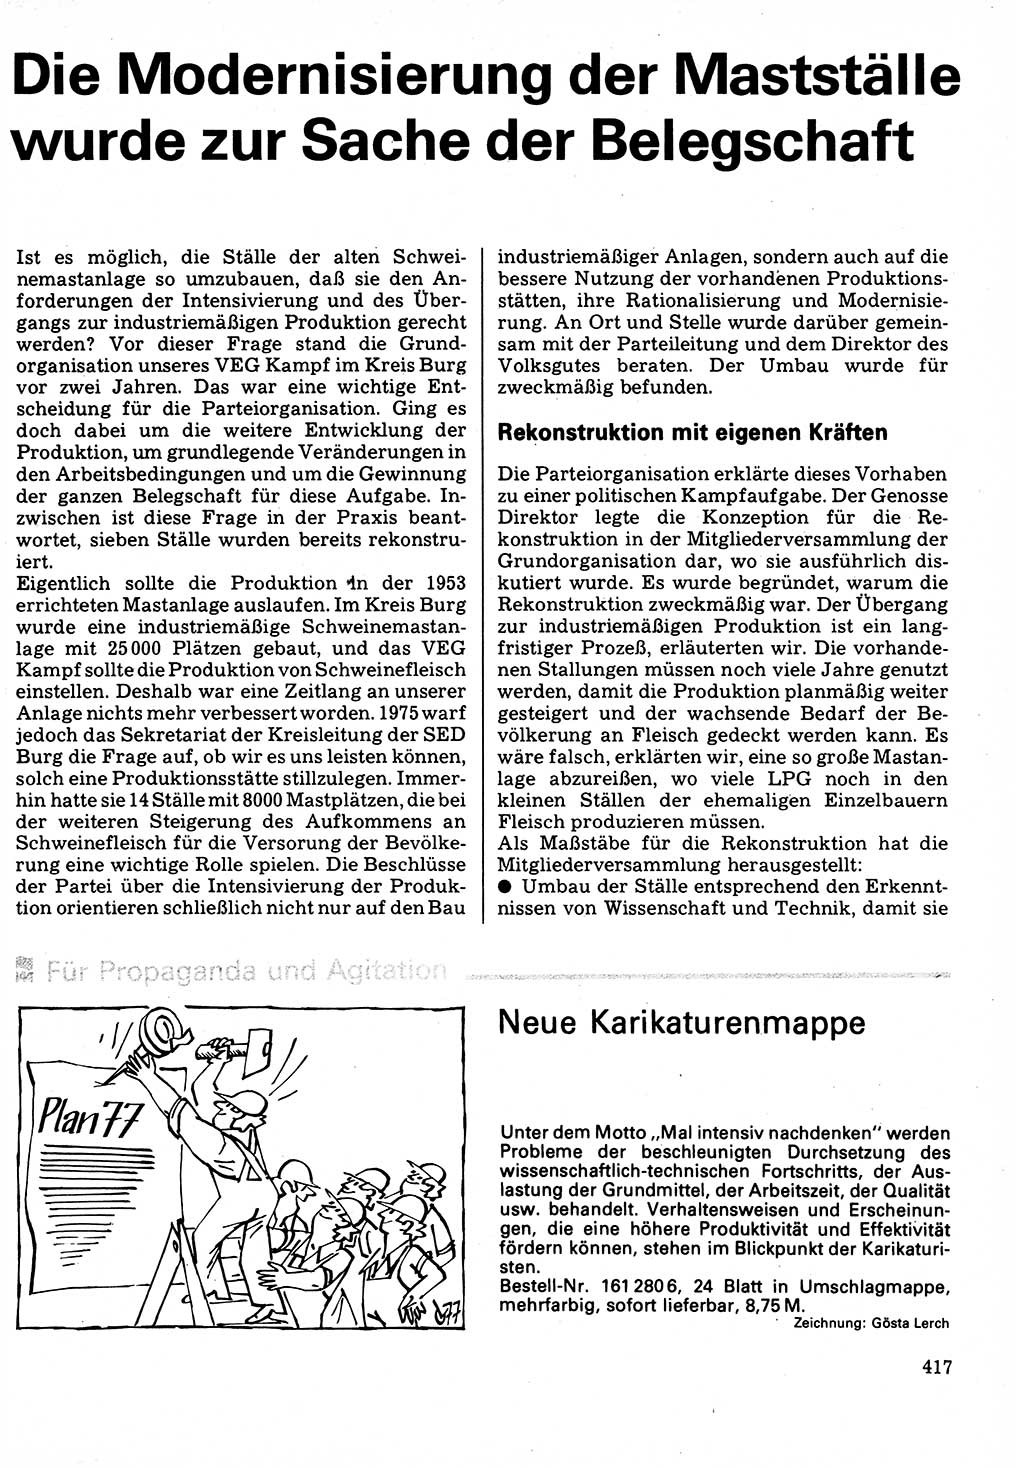 Neuer Weg (NW), Organ des Zentralkomitees (ZK) der SED (Sozialistische Einheitspartei Deutschlands) für Fragen des Parteilebens, 32. Jahrgang [Deutsche Demokratische Republik (DDR)] 1977, Seite 417 (NW ZK SED DDR 1977, S. 417)